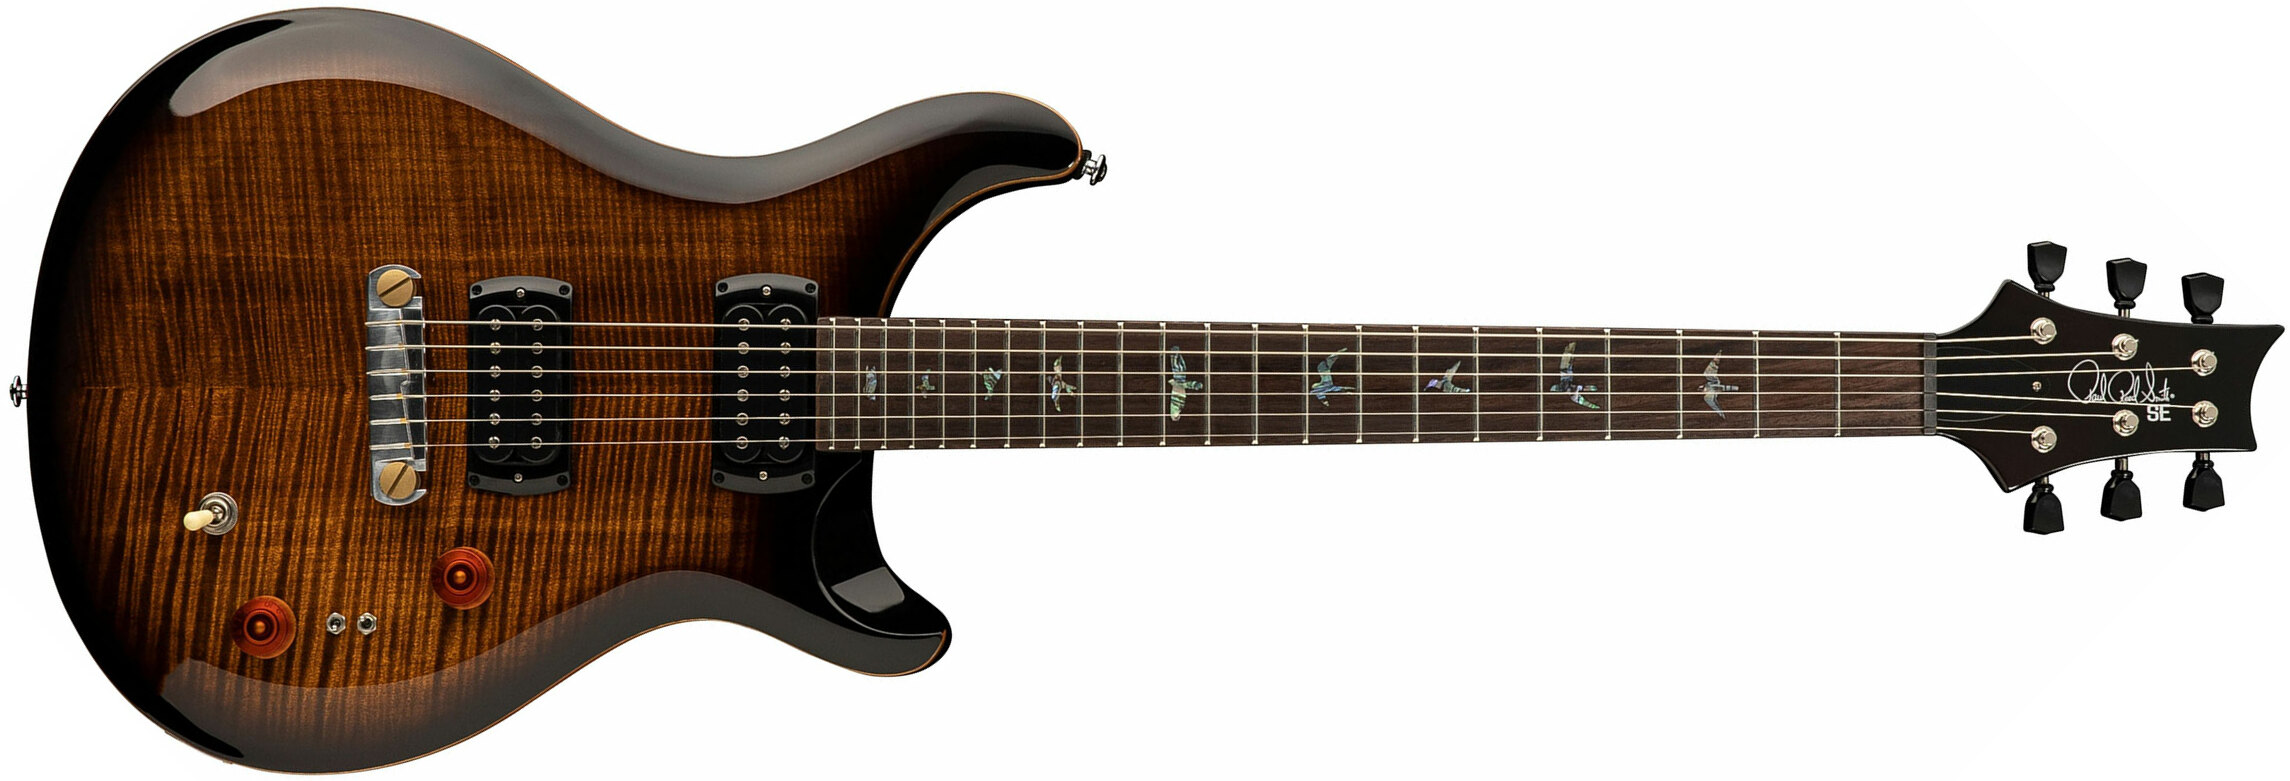 Prs Se Paul's Guitar 2h Ht Rw - Black Gold Burst - Double cut electric guitar - Main picture